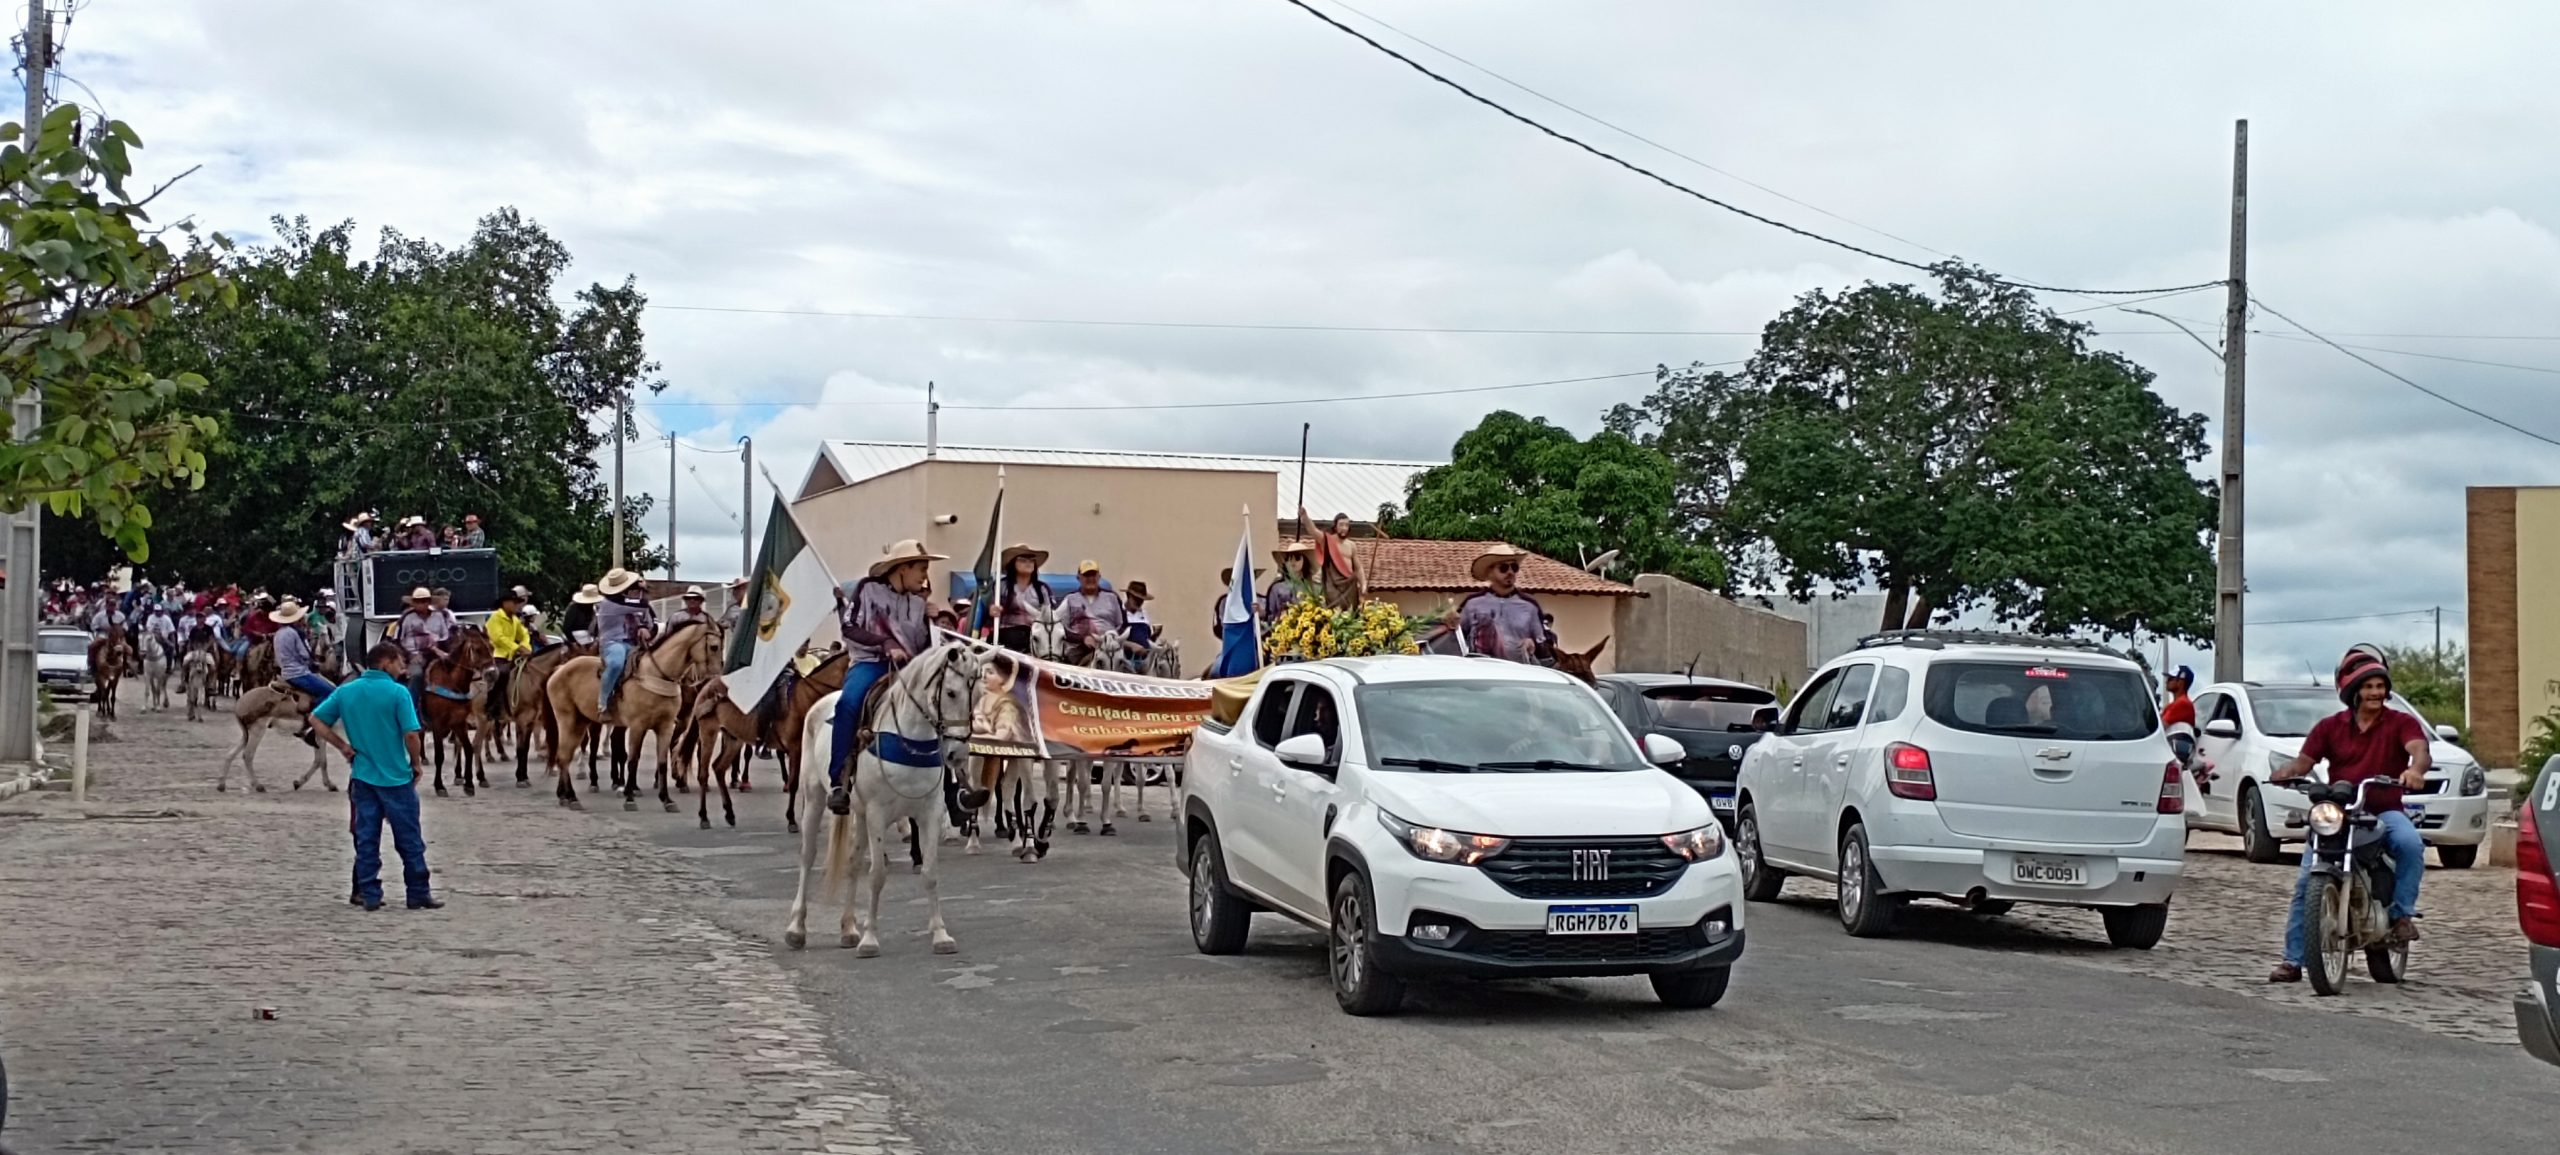 Cerro Corá: Cavalgada de São João Batista mais um ano de sucesso, confiram as imagens e vídeo